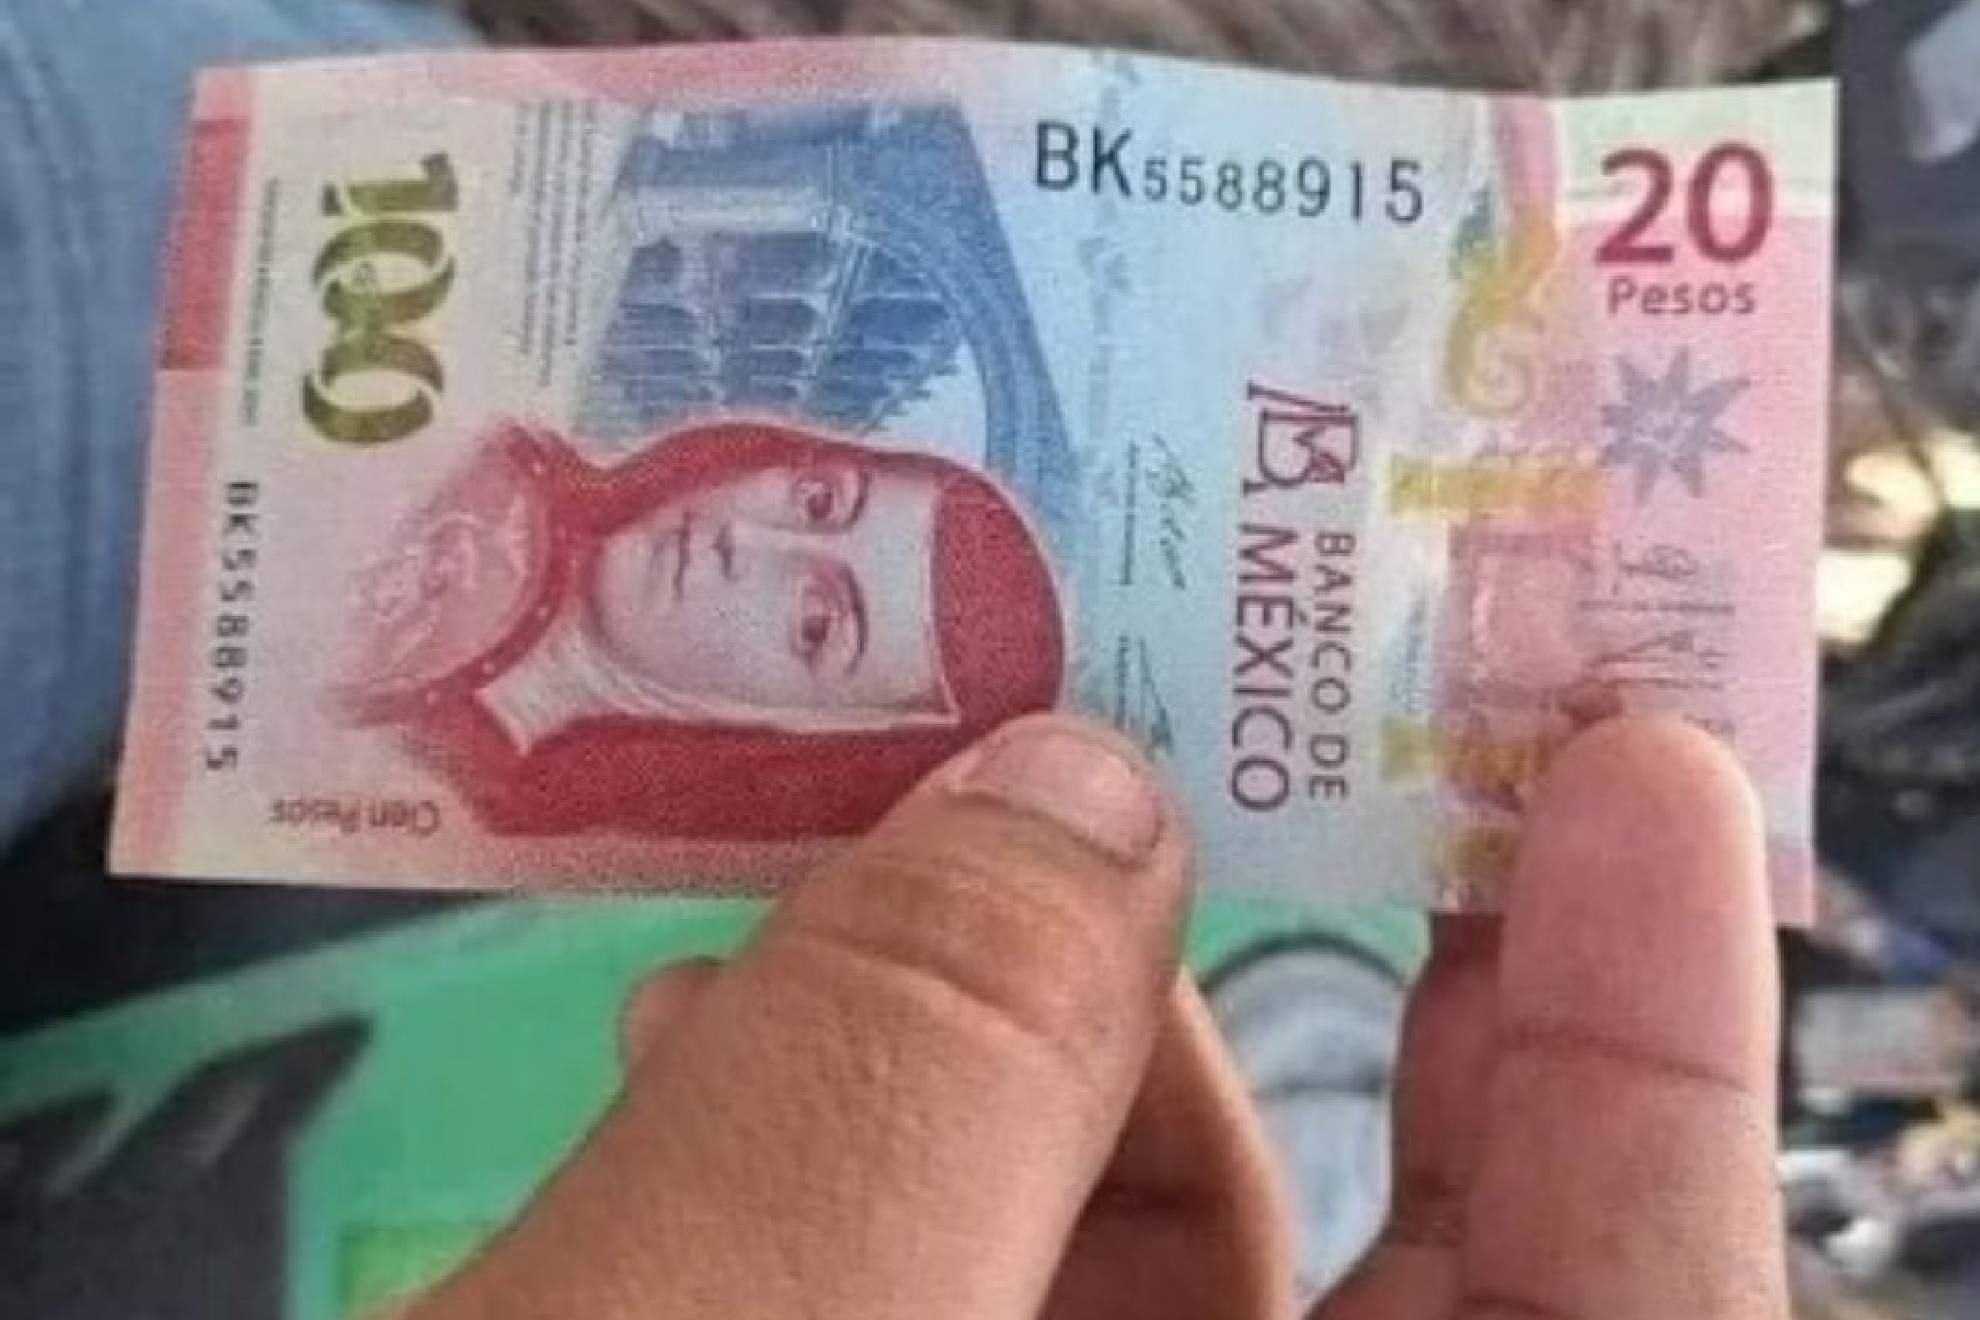 El extraño caso del billete de 120 pesos mexicanos que dio un cajero automático.